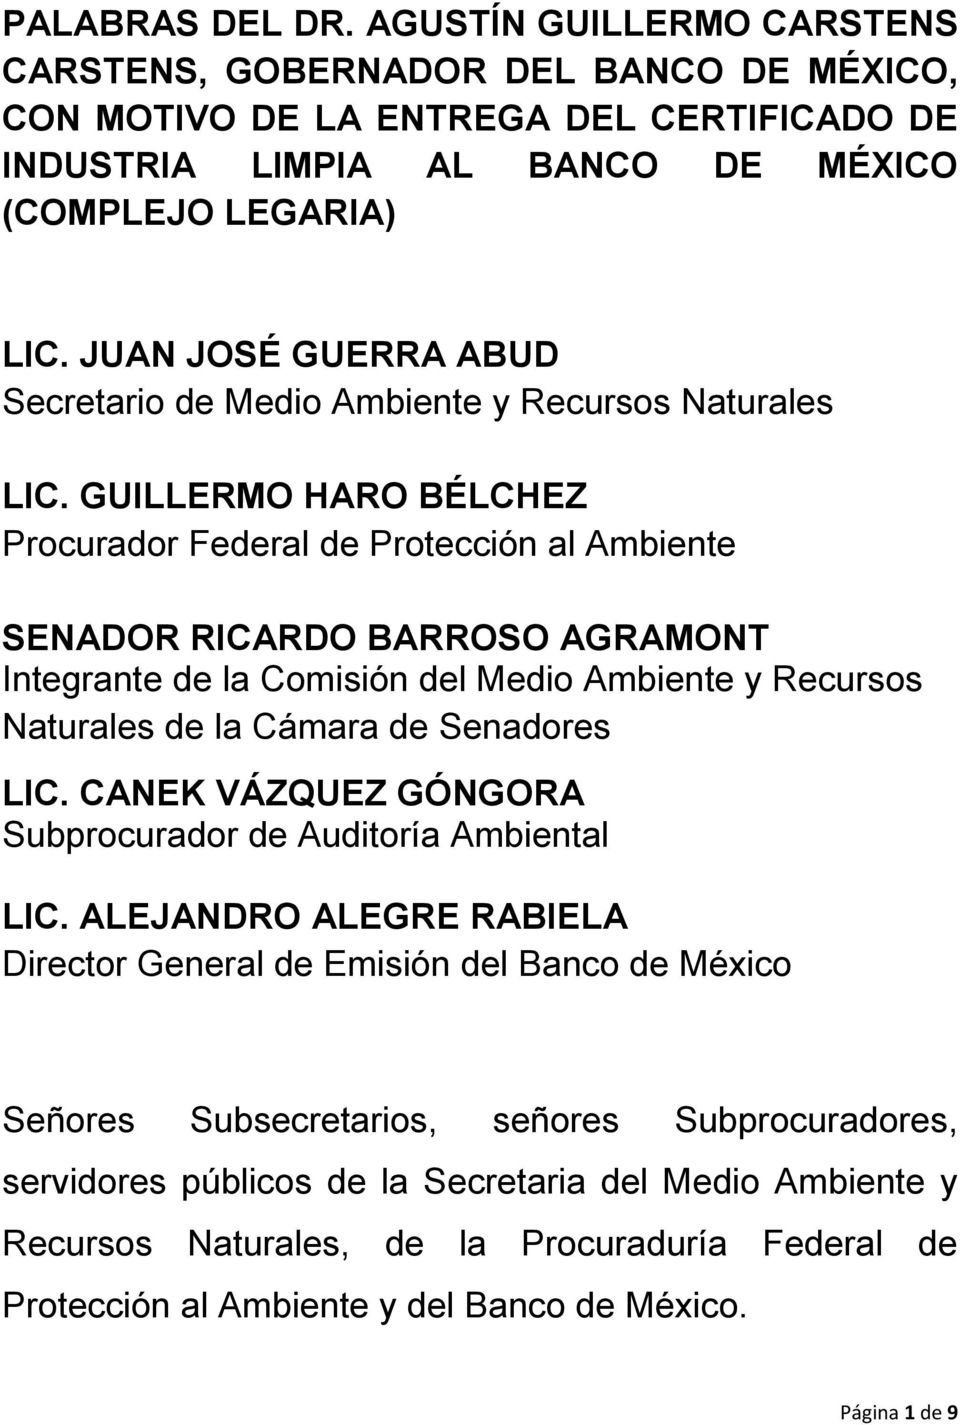 GUILLERMO HARO BÉLCHEZ Procurador Federal de Protección al Ambiente SENADOR RICARDO BARROSO AGRAMONT Integrante de la Comisión del Medio Ambiente y Recursos Naturales de la Cámara de Senadores LIC.